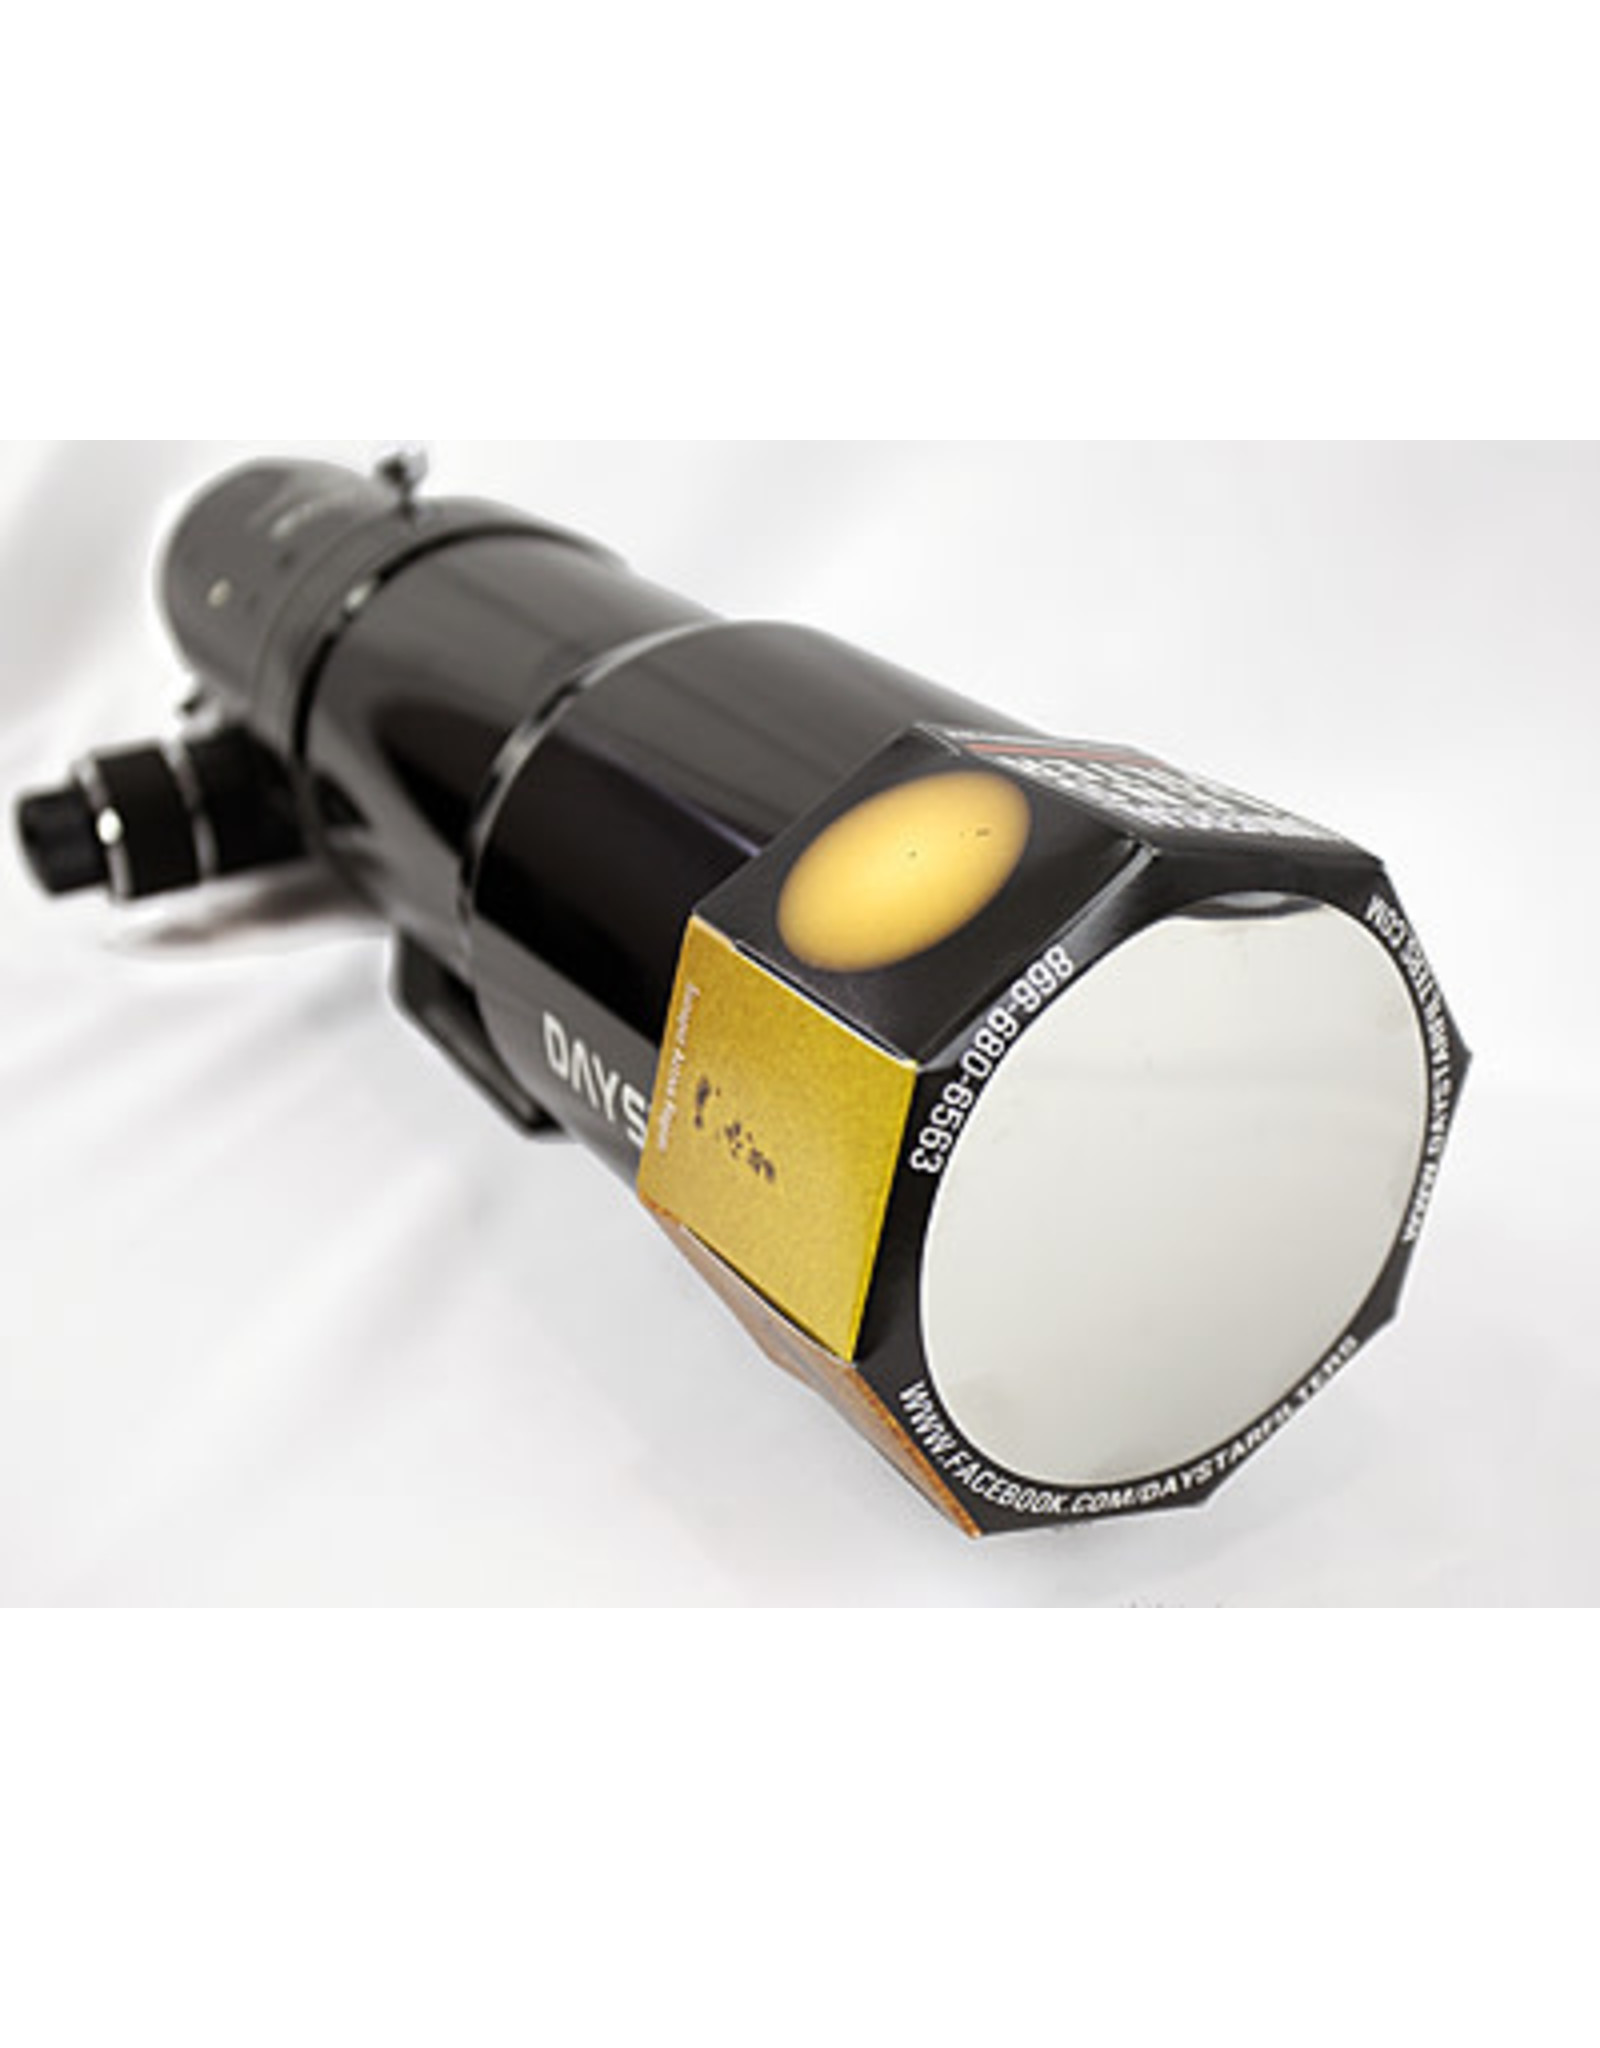 Baader Planetarium Daystar Universal Baader Solar Filter 40-59mm Binocular 2 Pack